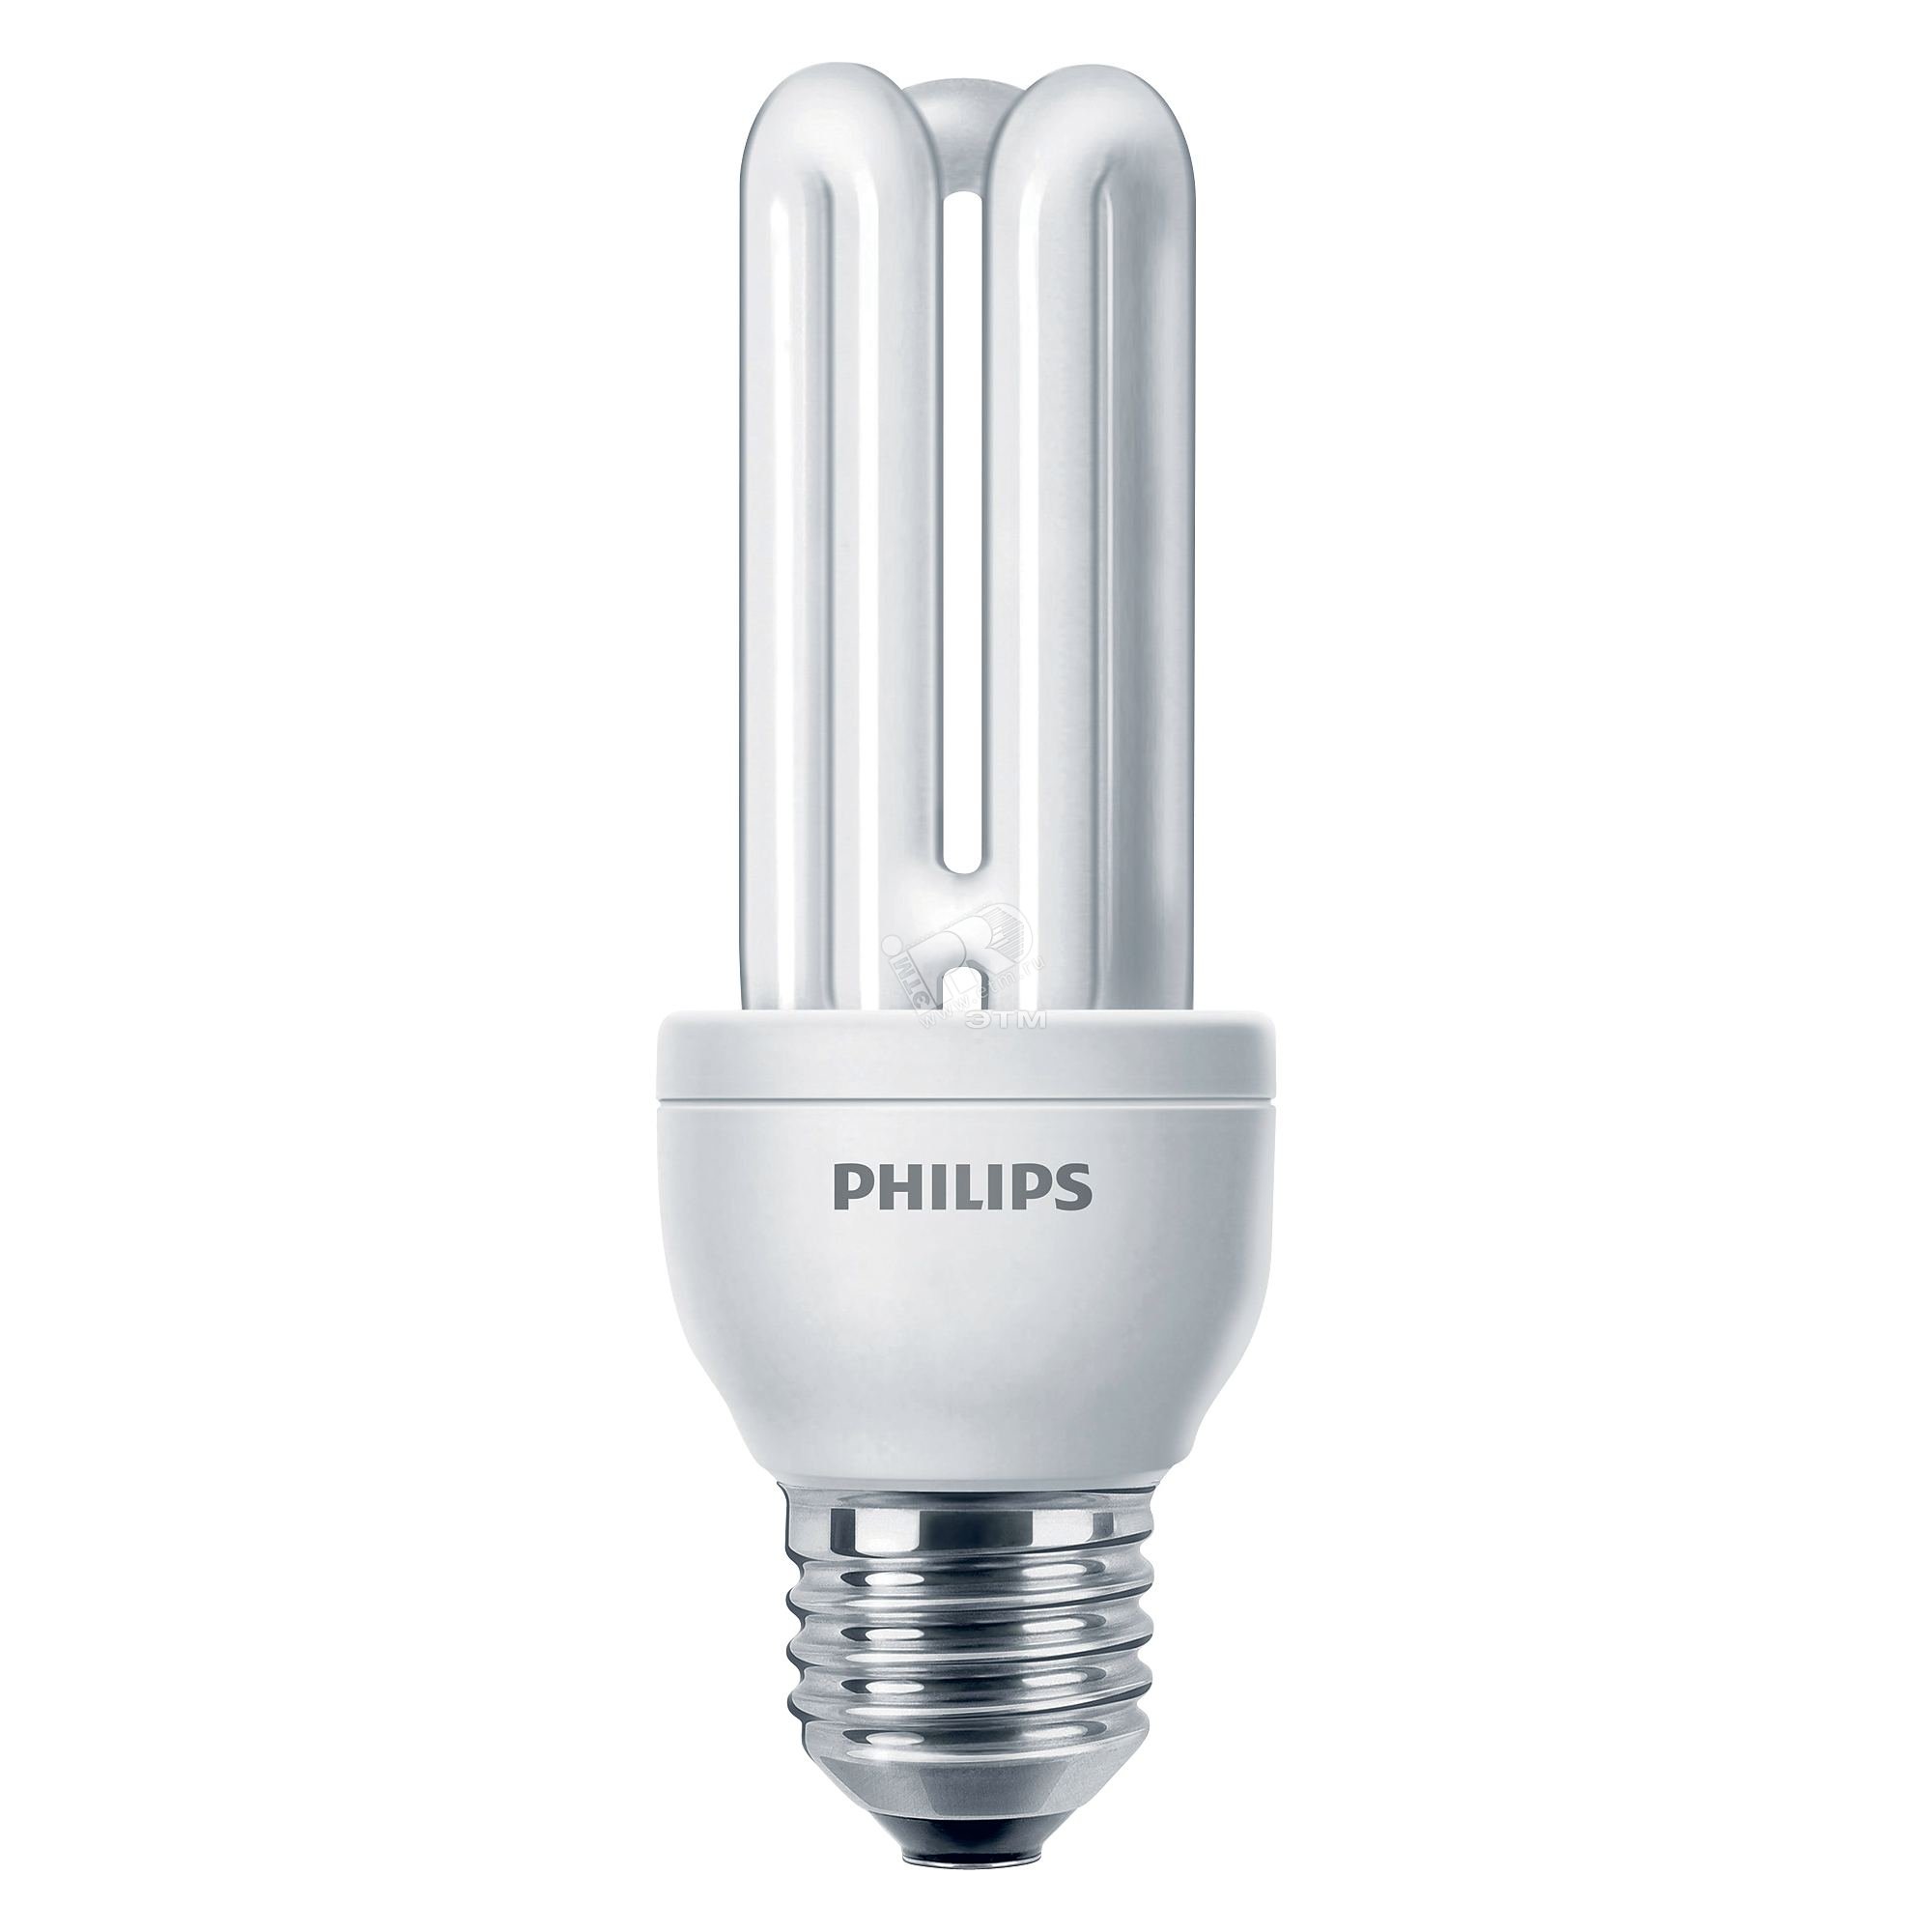 Купить лампочки philips. Лампы энергосберегающие 11w/3u e27. Лампа КЛЛ 18вт Philips. Лампа энергосберегающая Toshiba 11w/3u e27. Лампа люминесцентная КЛЛ Genie.